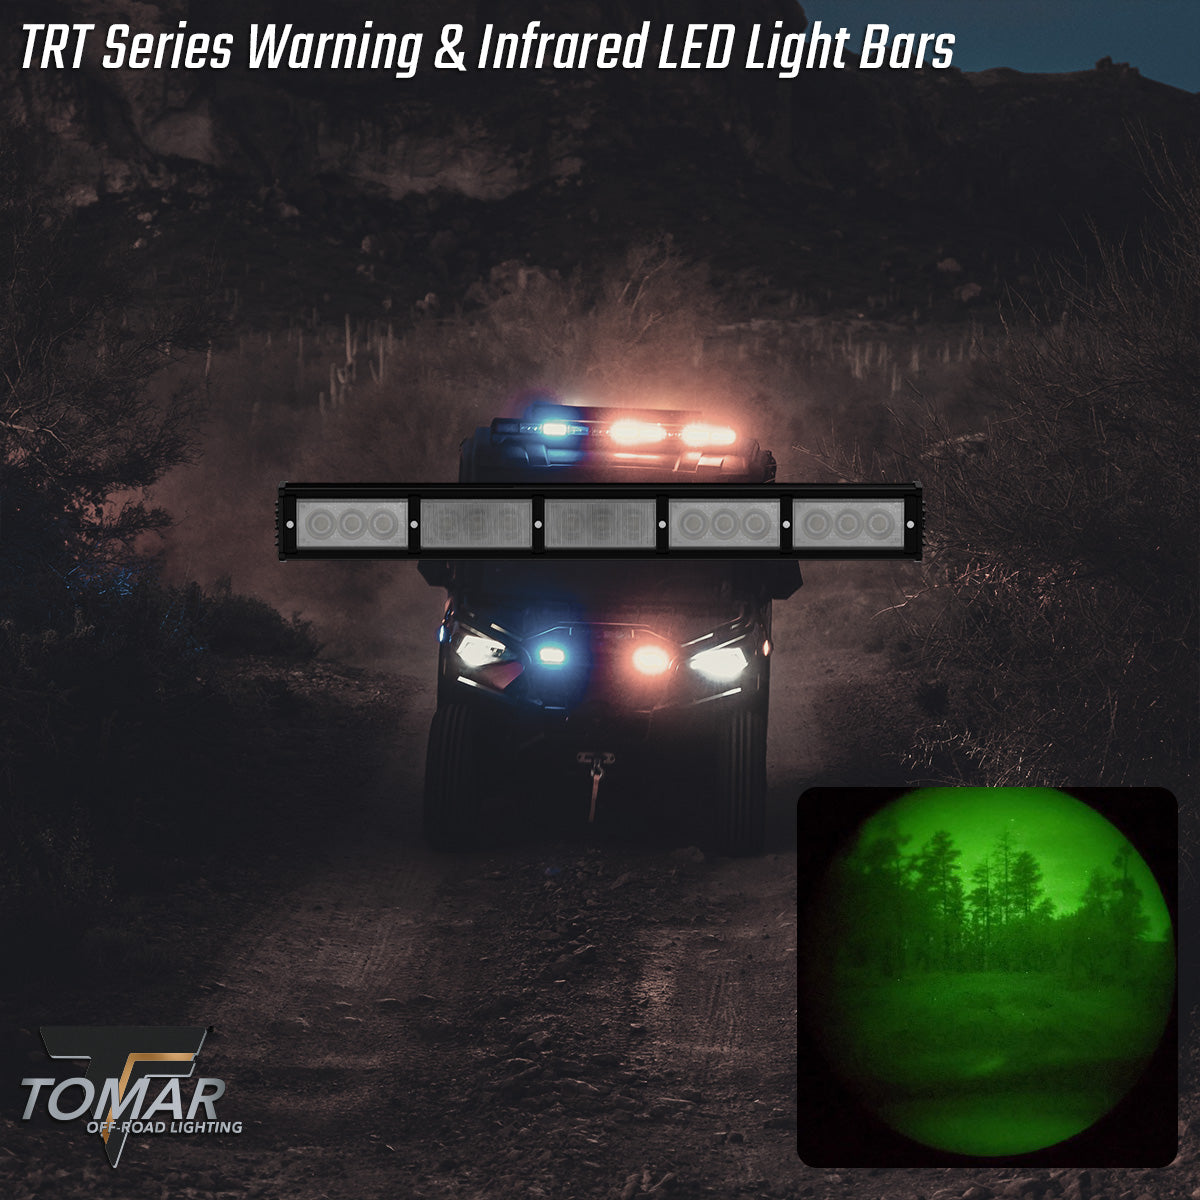 TOMAR TRT AND IR WARNING LED LIGHTS